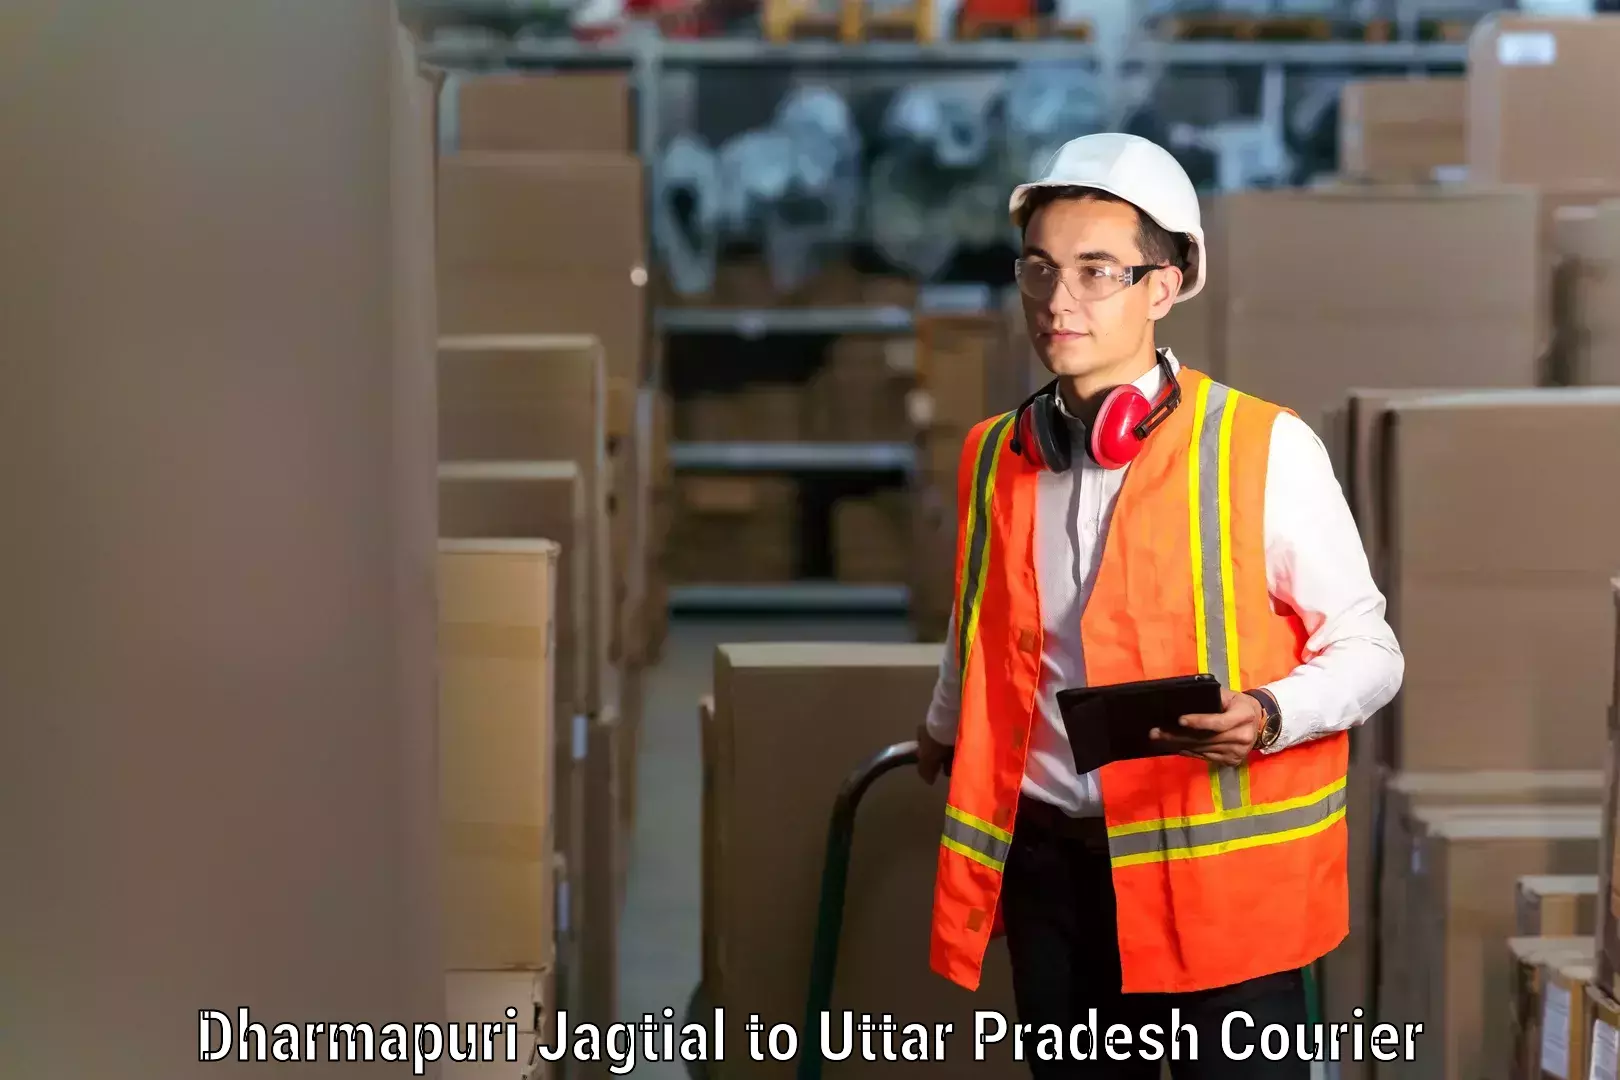 Efficient household movers Dharmapuri Jagtial to Kheragarh